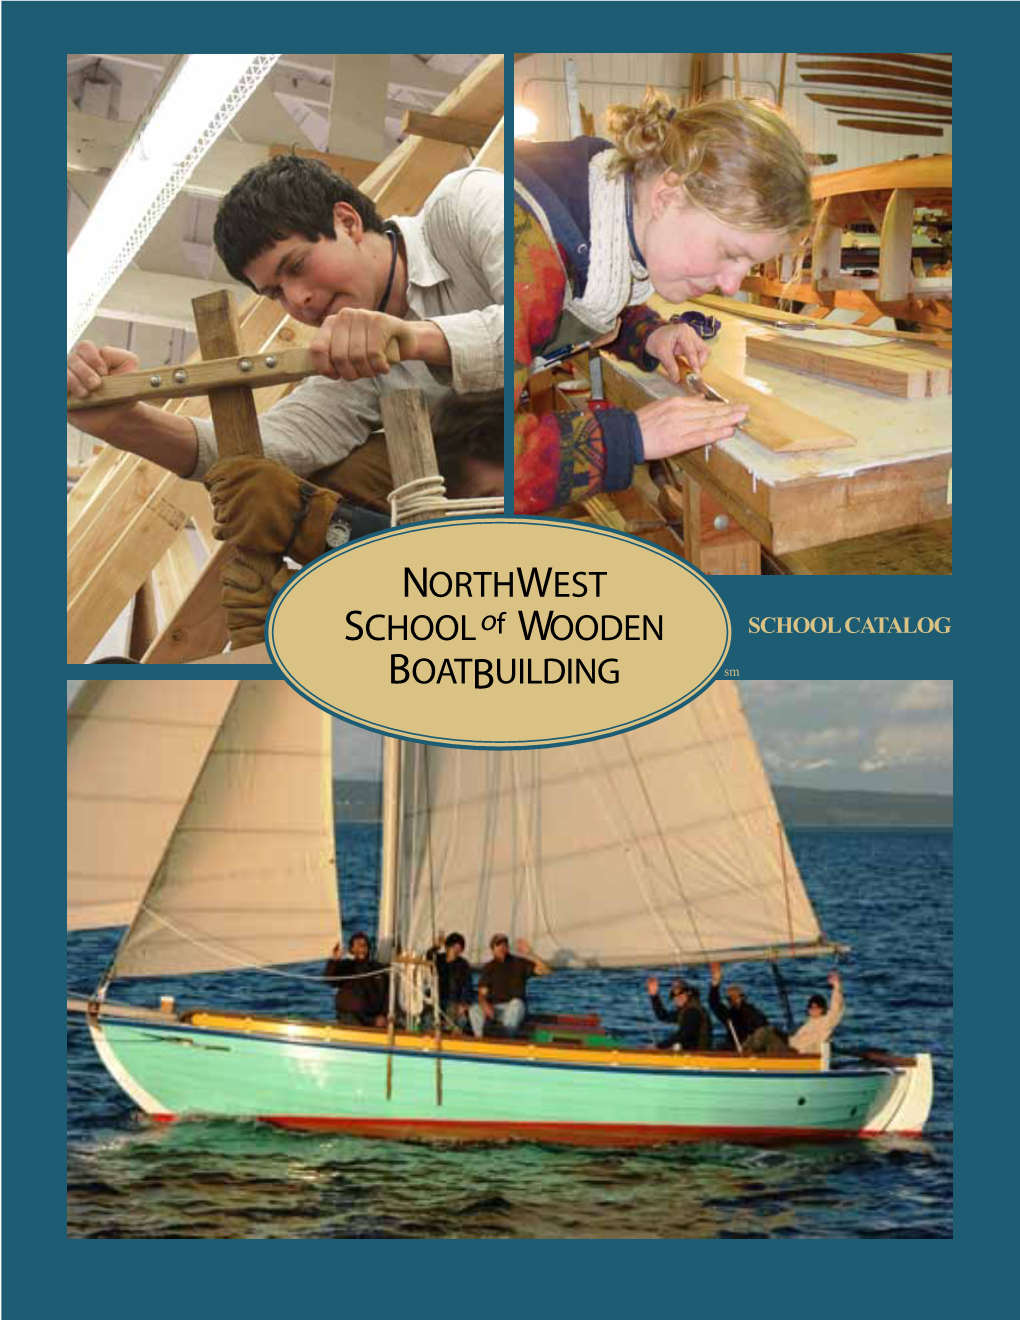 Northwest School of Wooden Boatbuilding